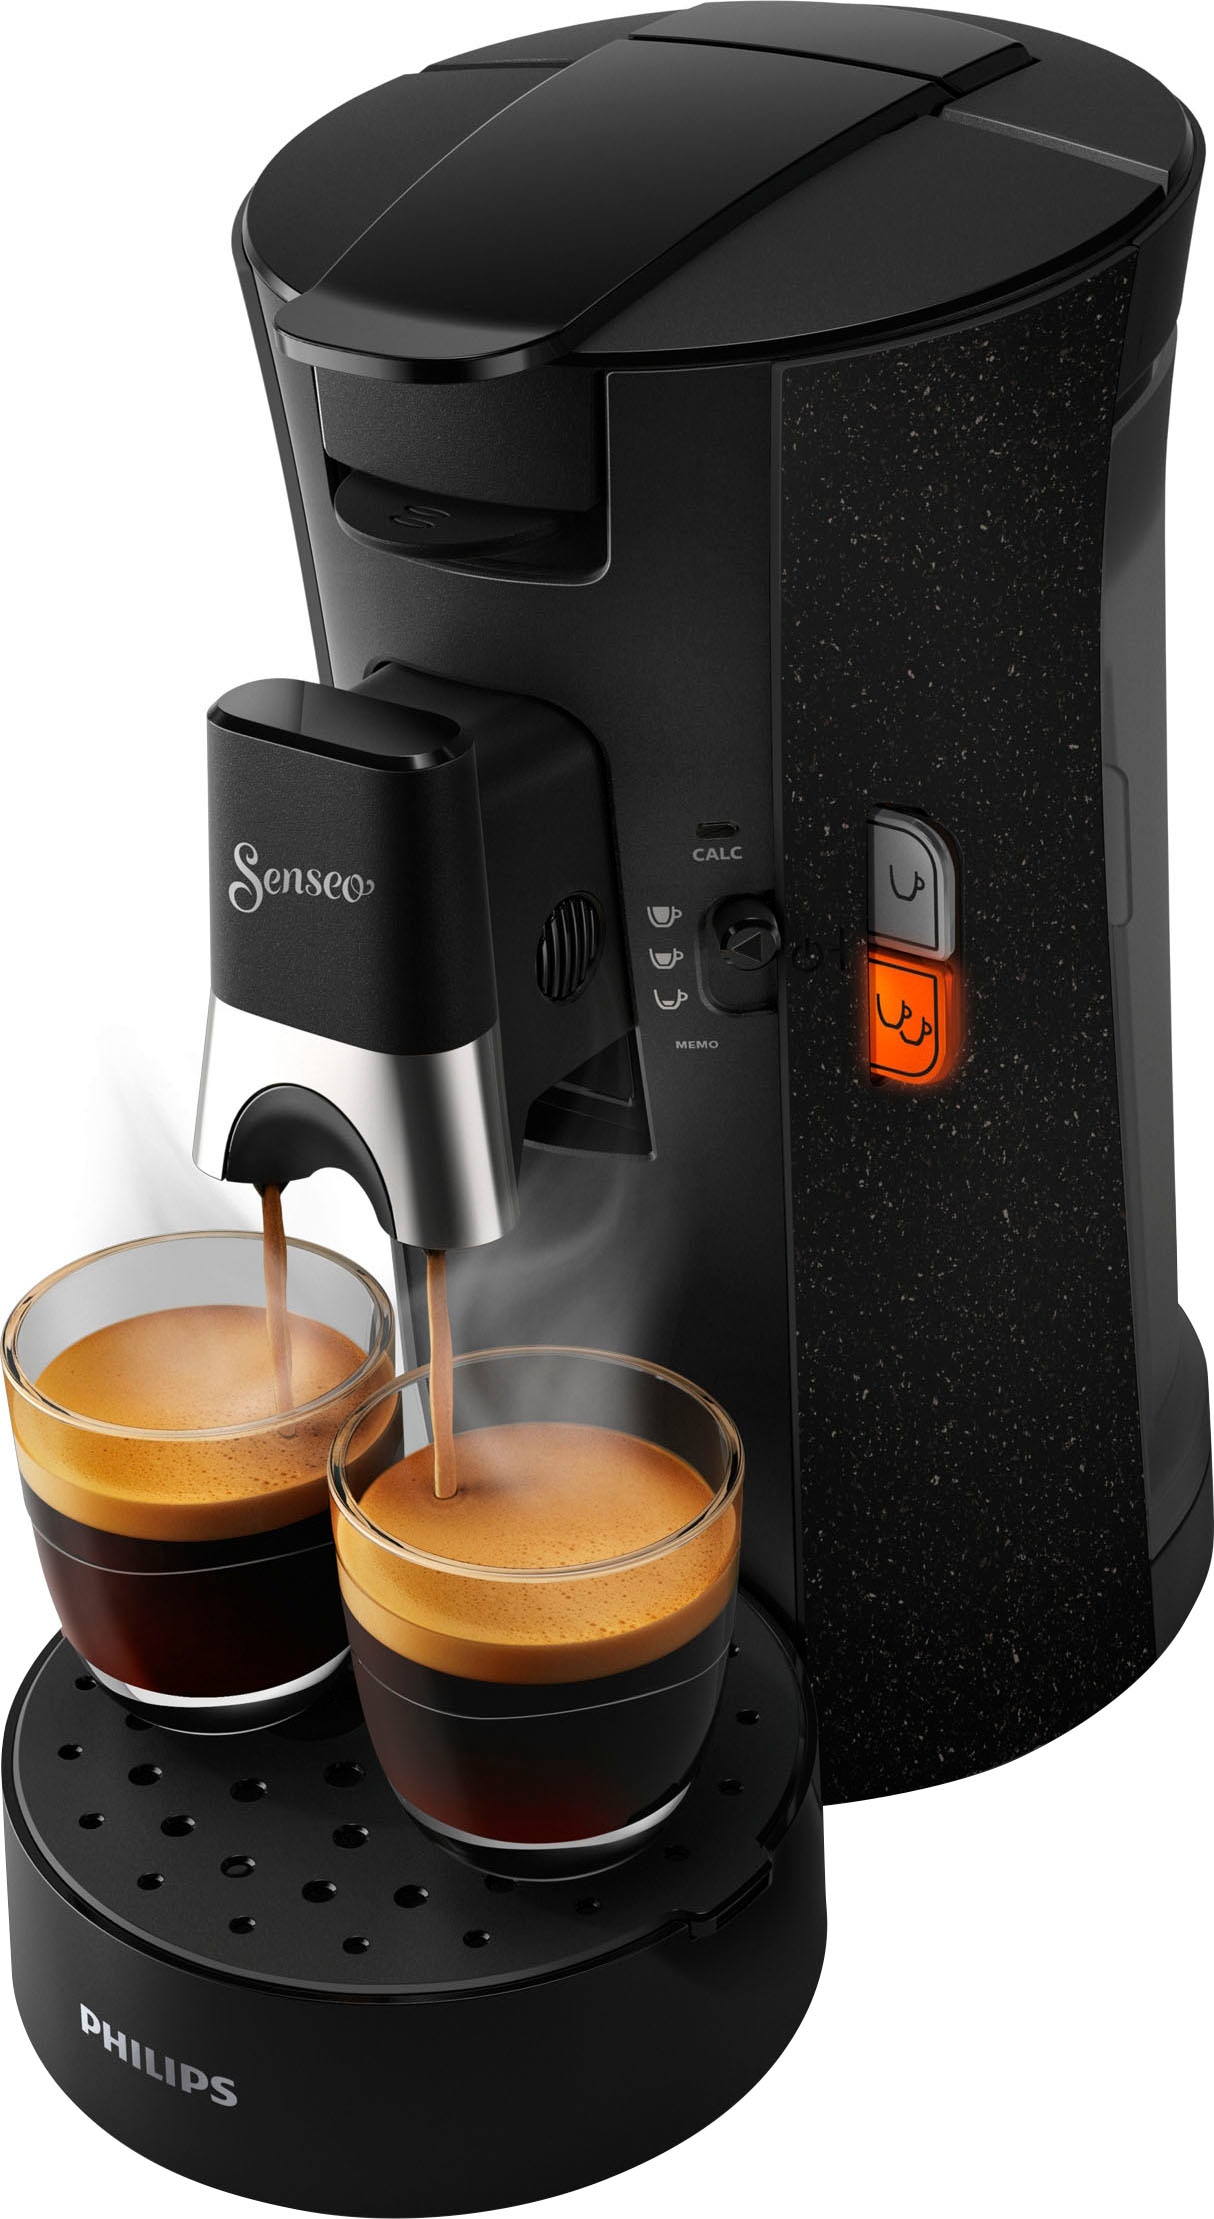 € Zugaben 14 Gratis- Senseo 3 schwarz UVP, - Garantie inkl. Kaffeepadmaschine im XXL CSA240/20«, Wert ECO »Select mit Jahren von Philips